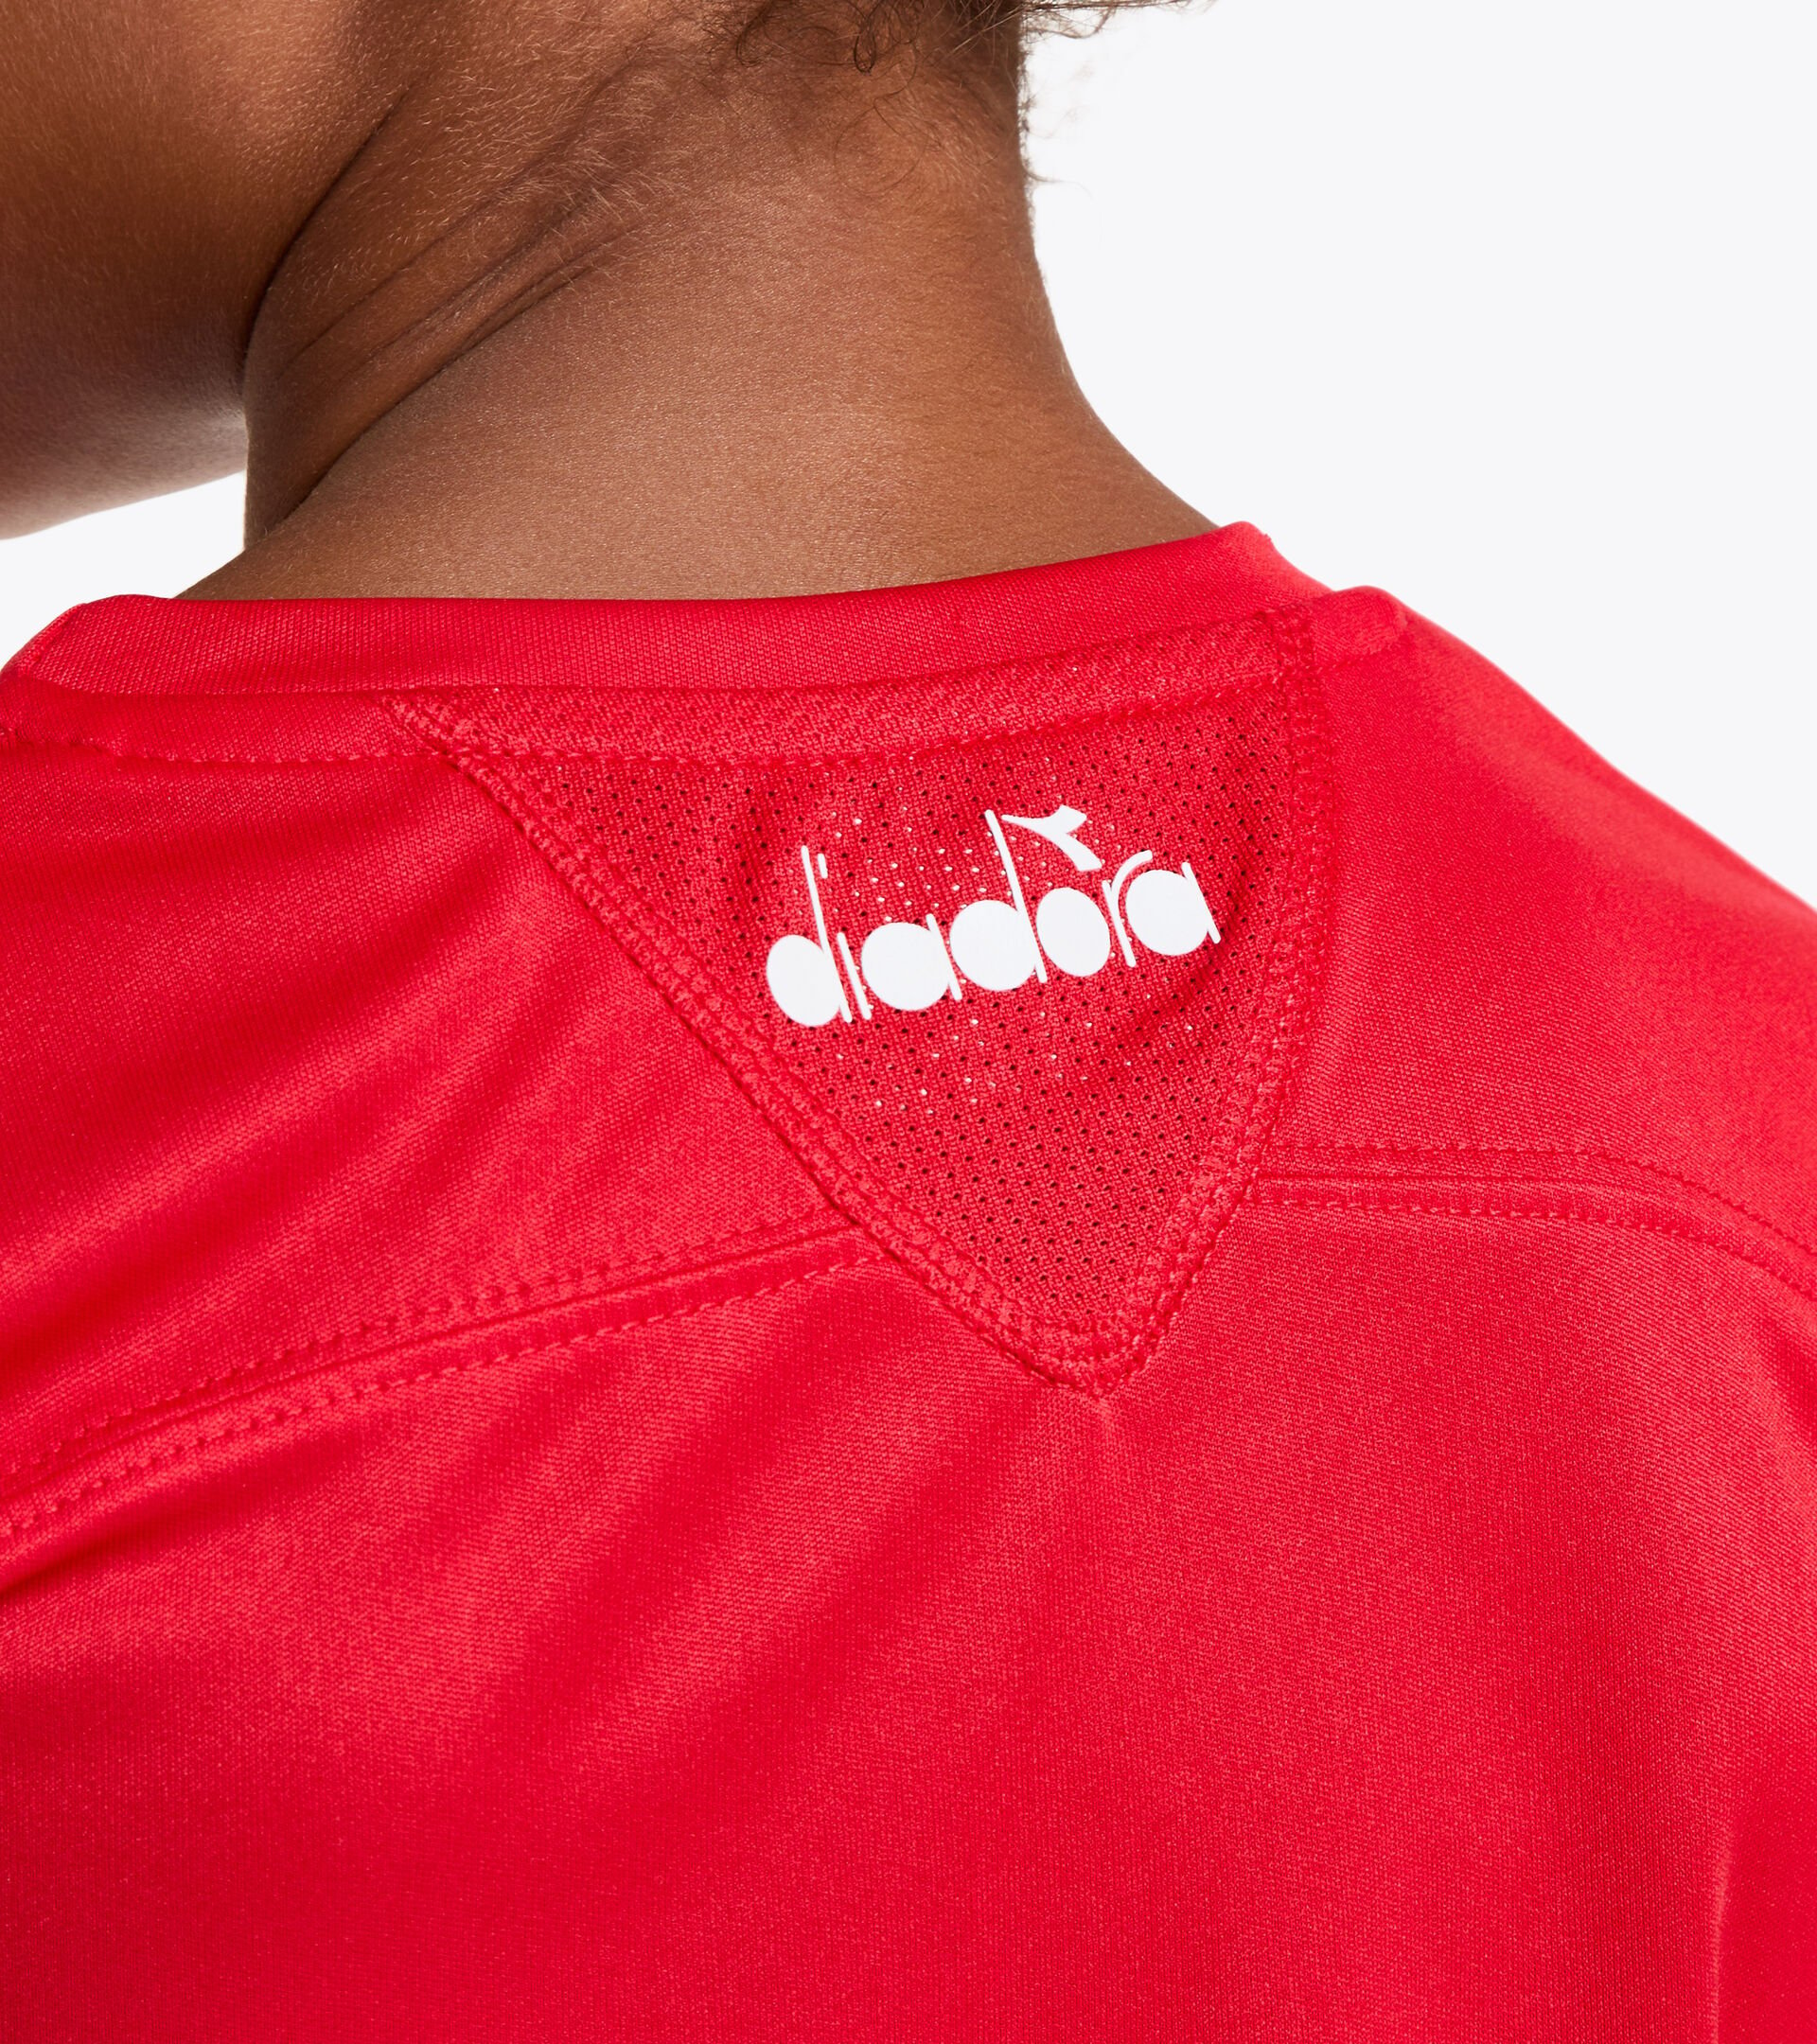 Camiseta de tenis - Junior G. T-SHIRT TEAM ROJO TOMATE - Diadora